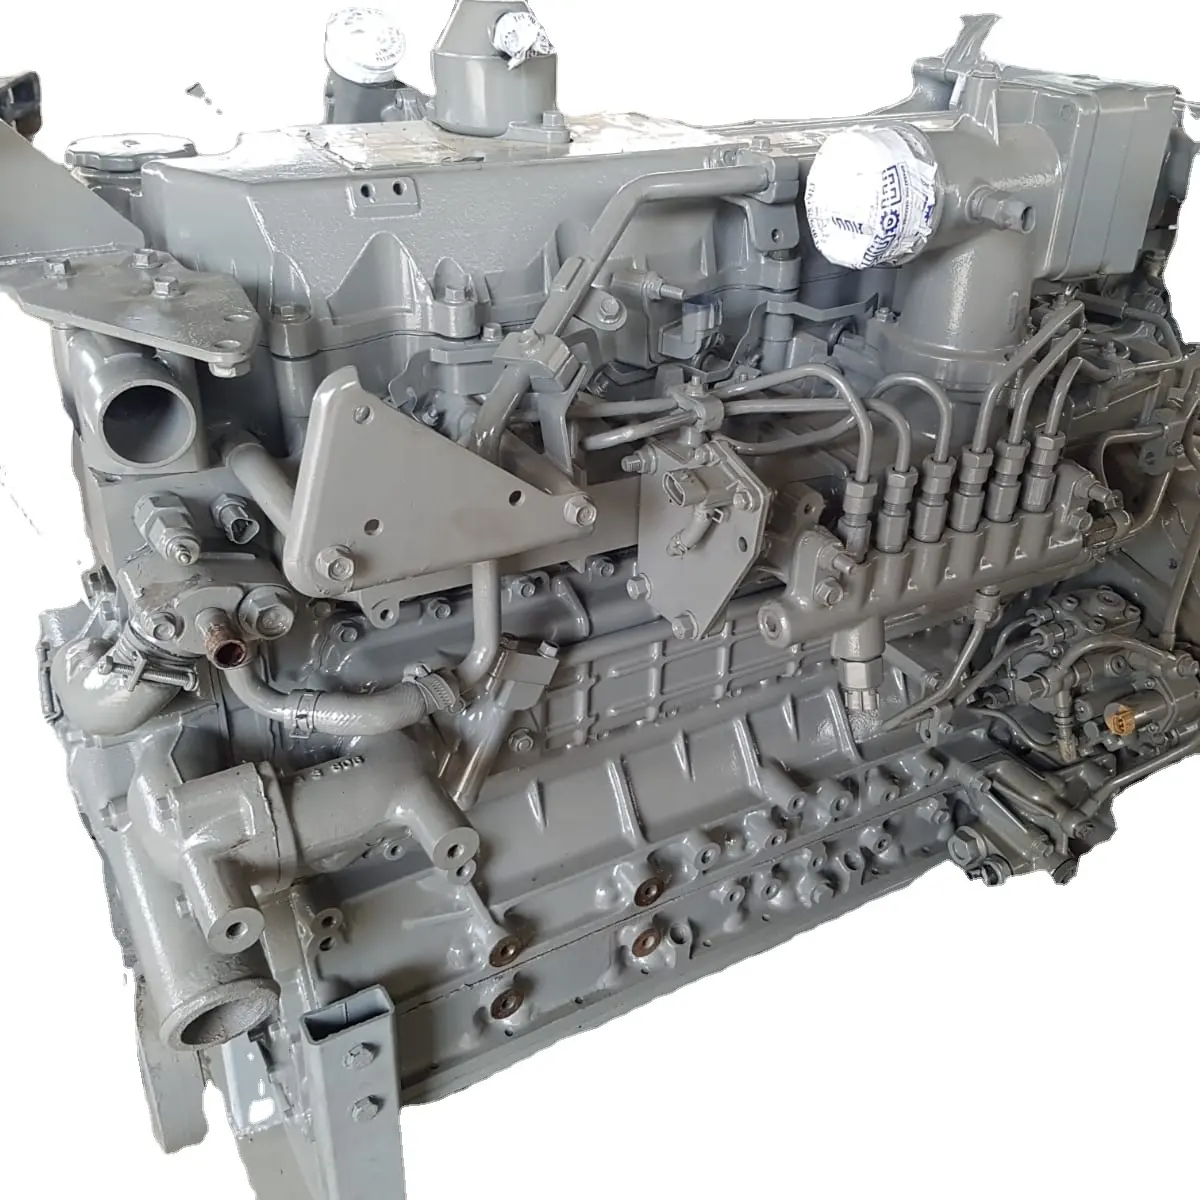 Nuevo conjunto de motor diésel 6HK para Tuck y camiones pesados con motor diésel de 6 cilindros